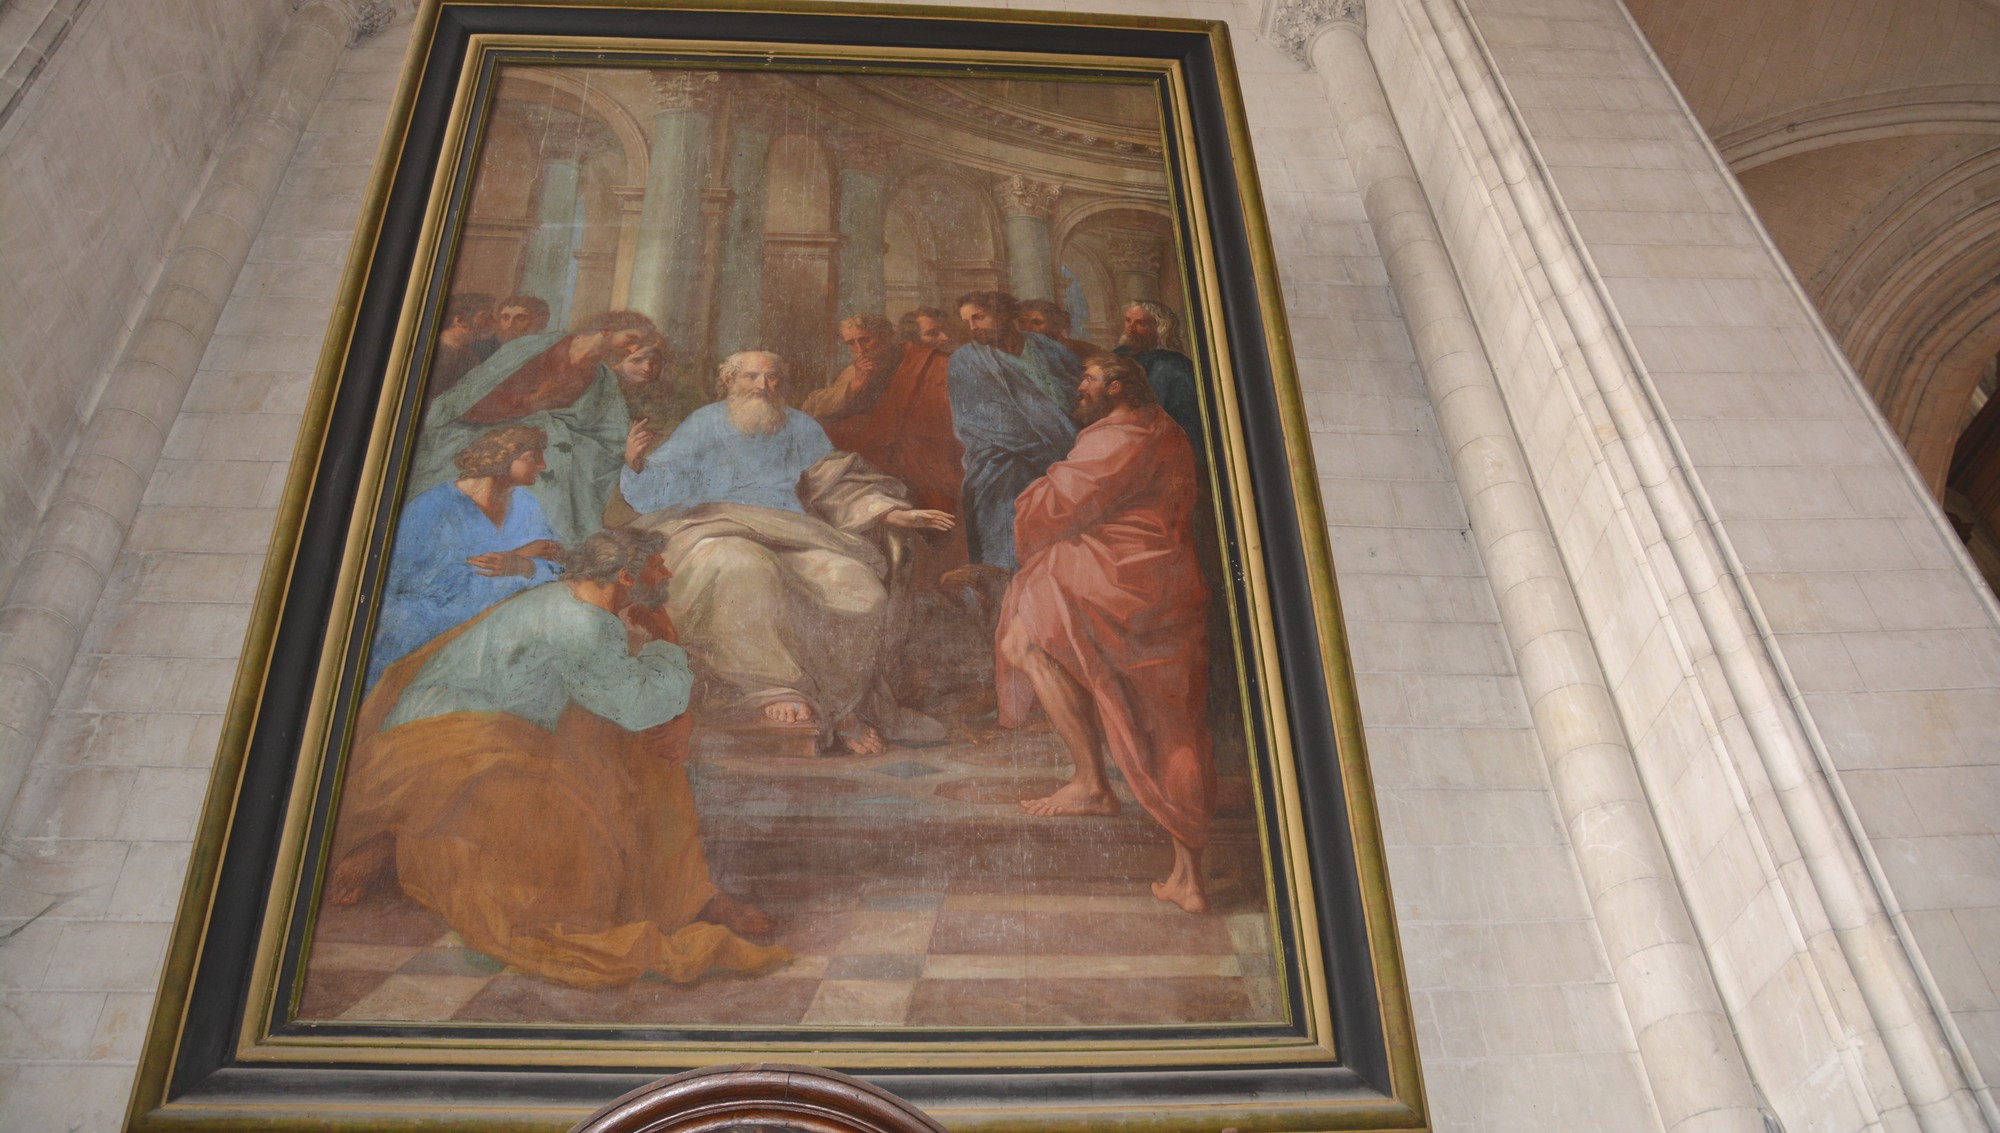 Saint Paul à Athénes du peintre Arnould de Vuez(1644-1720). Scène faisant référence aux Actes des Apôtres, chapitre 17. Paul de Tarse est à Athènes prêchant sur la place publique. 